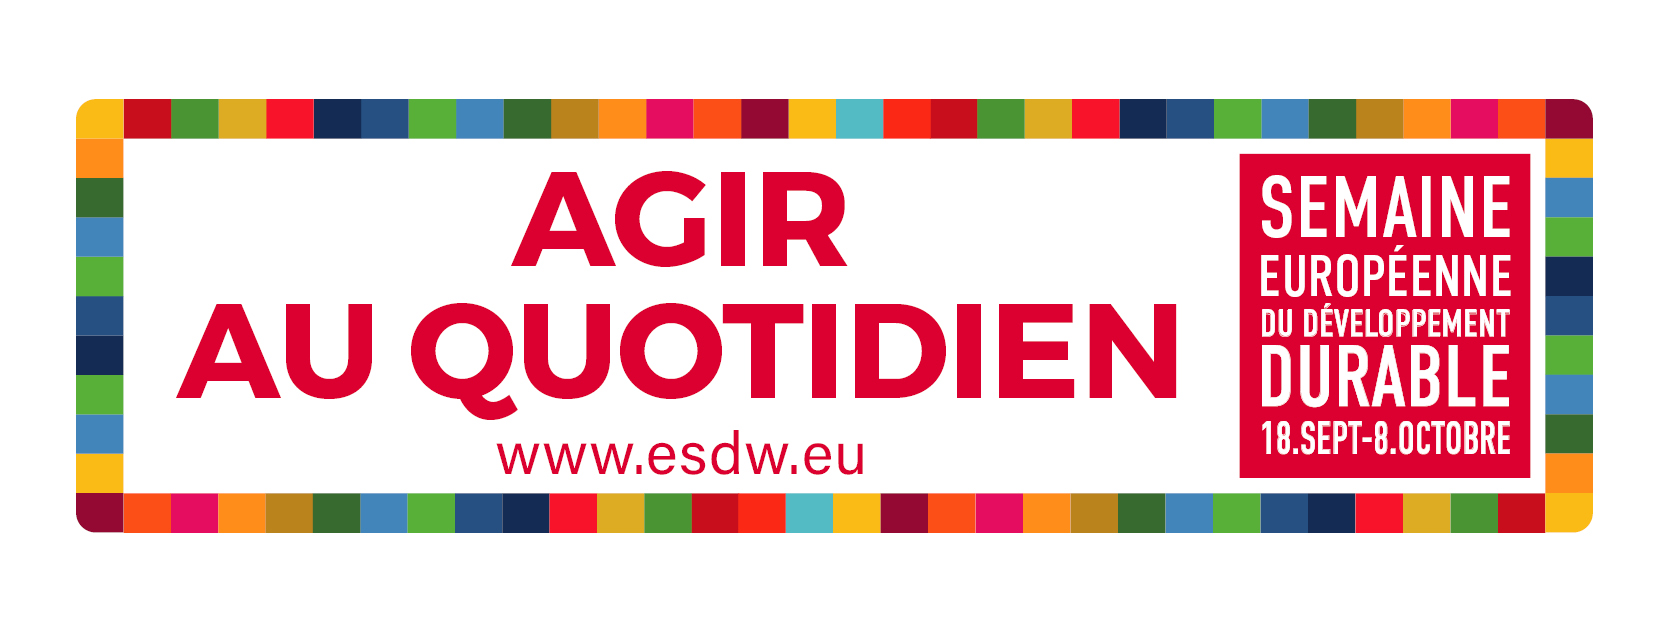 Semaine européenne du développement durable - SEDD